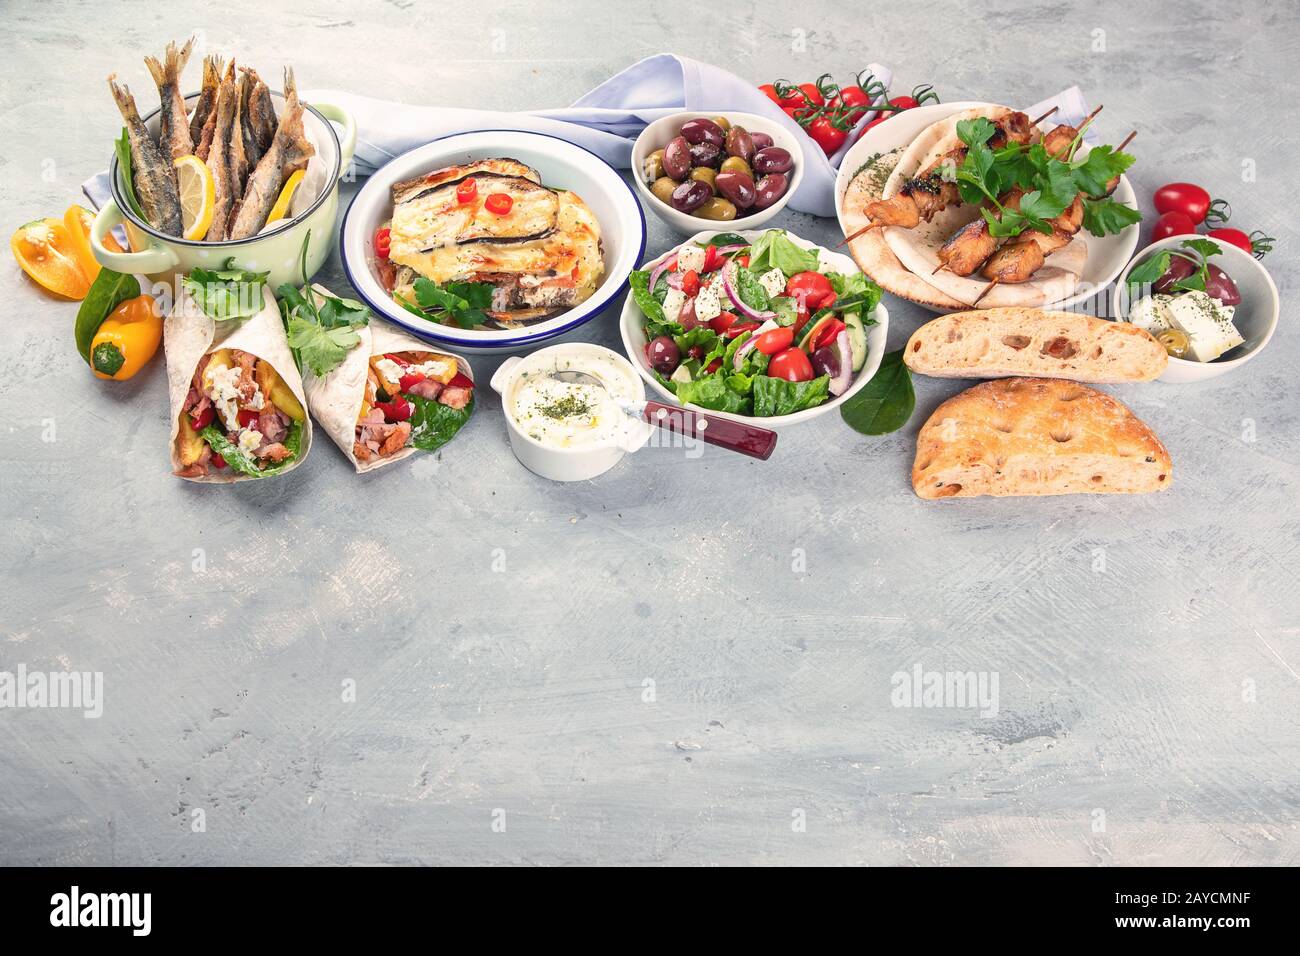 Cibo greco su sfondo grigio. Moussaka, gyros, souvlaki, pita, insalata, olive e verdure. Piatti tradizionali di diversi tipi di piatti greci. Immagine con c Foto Stock